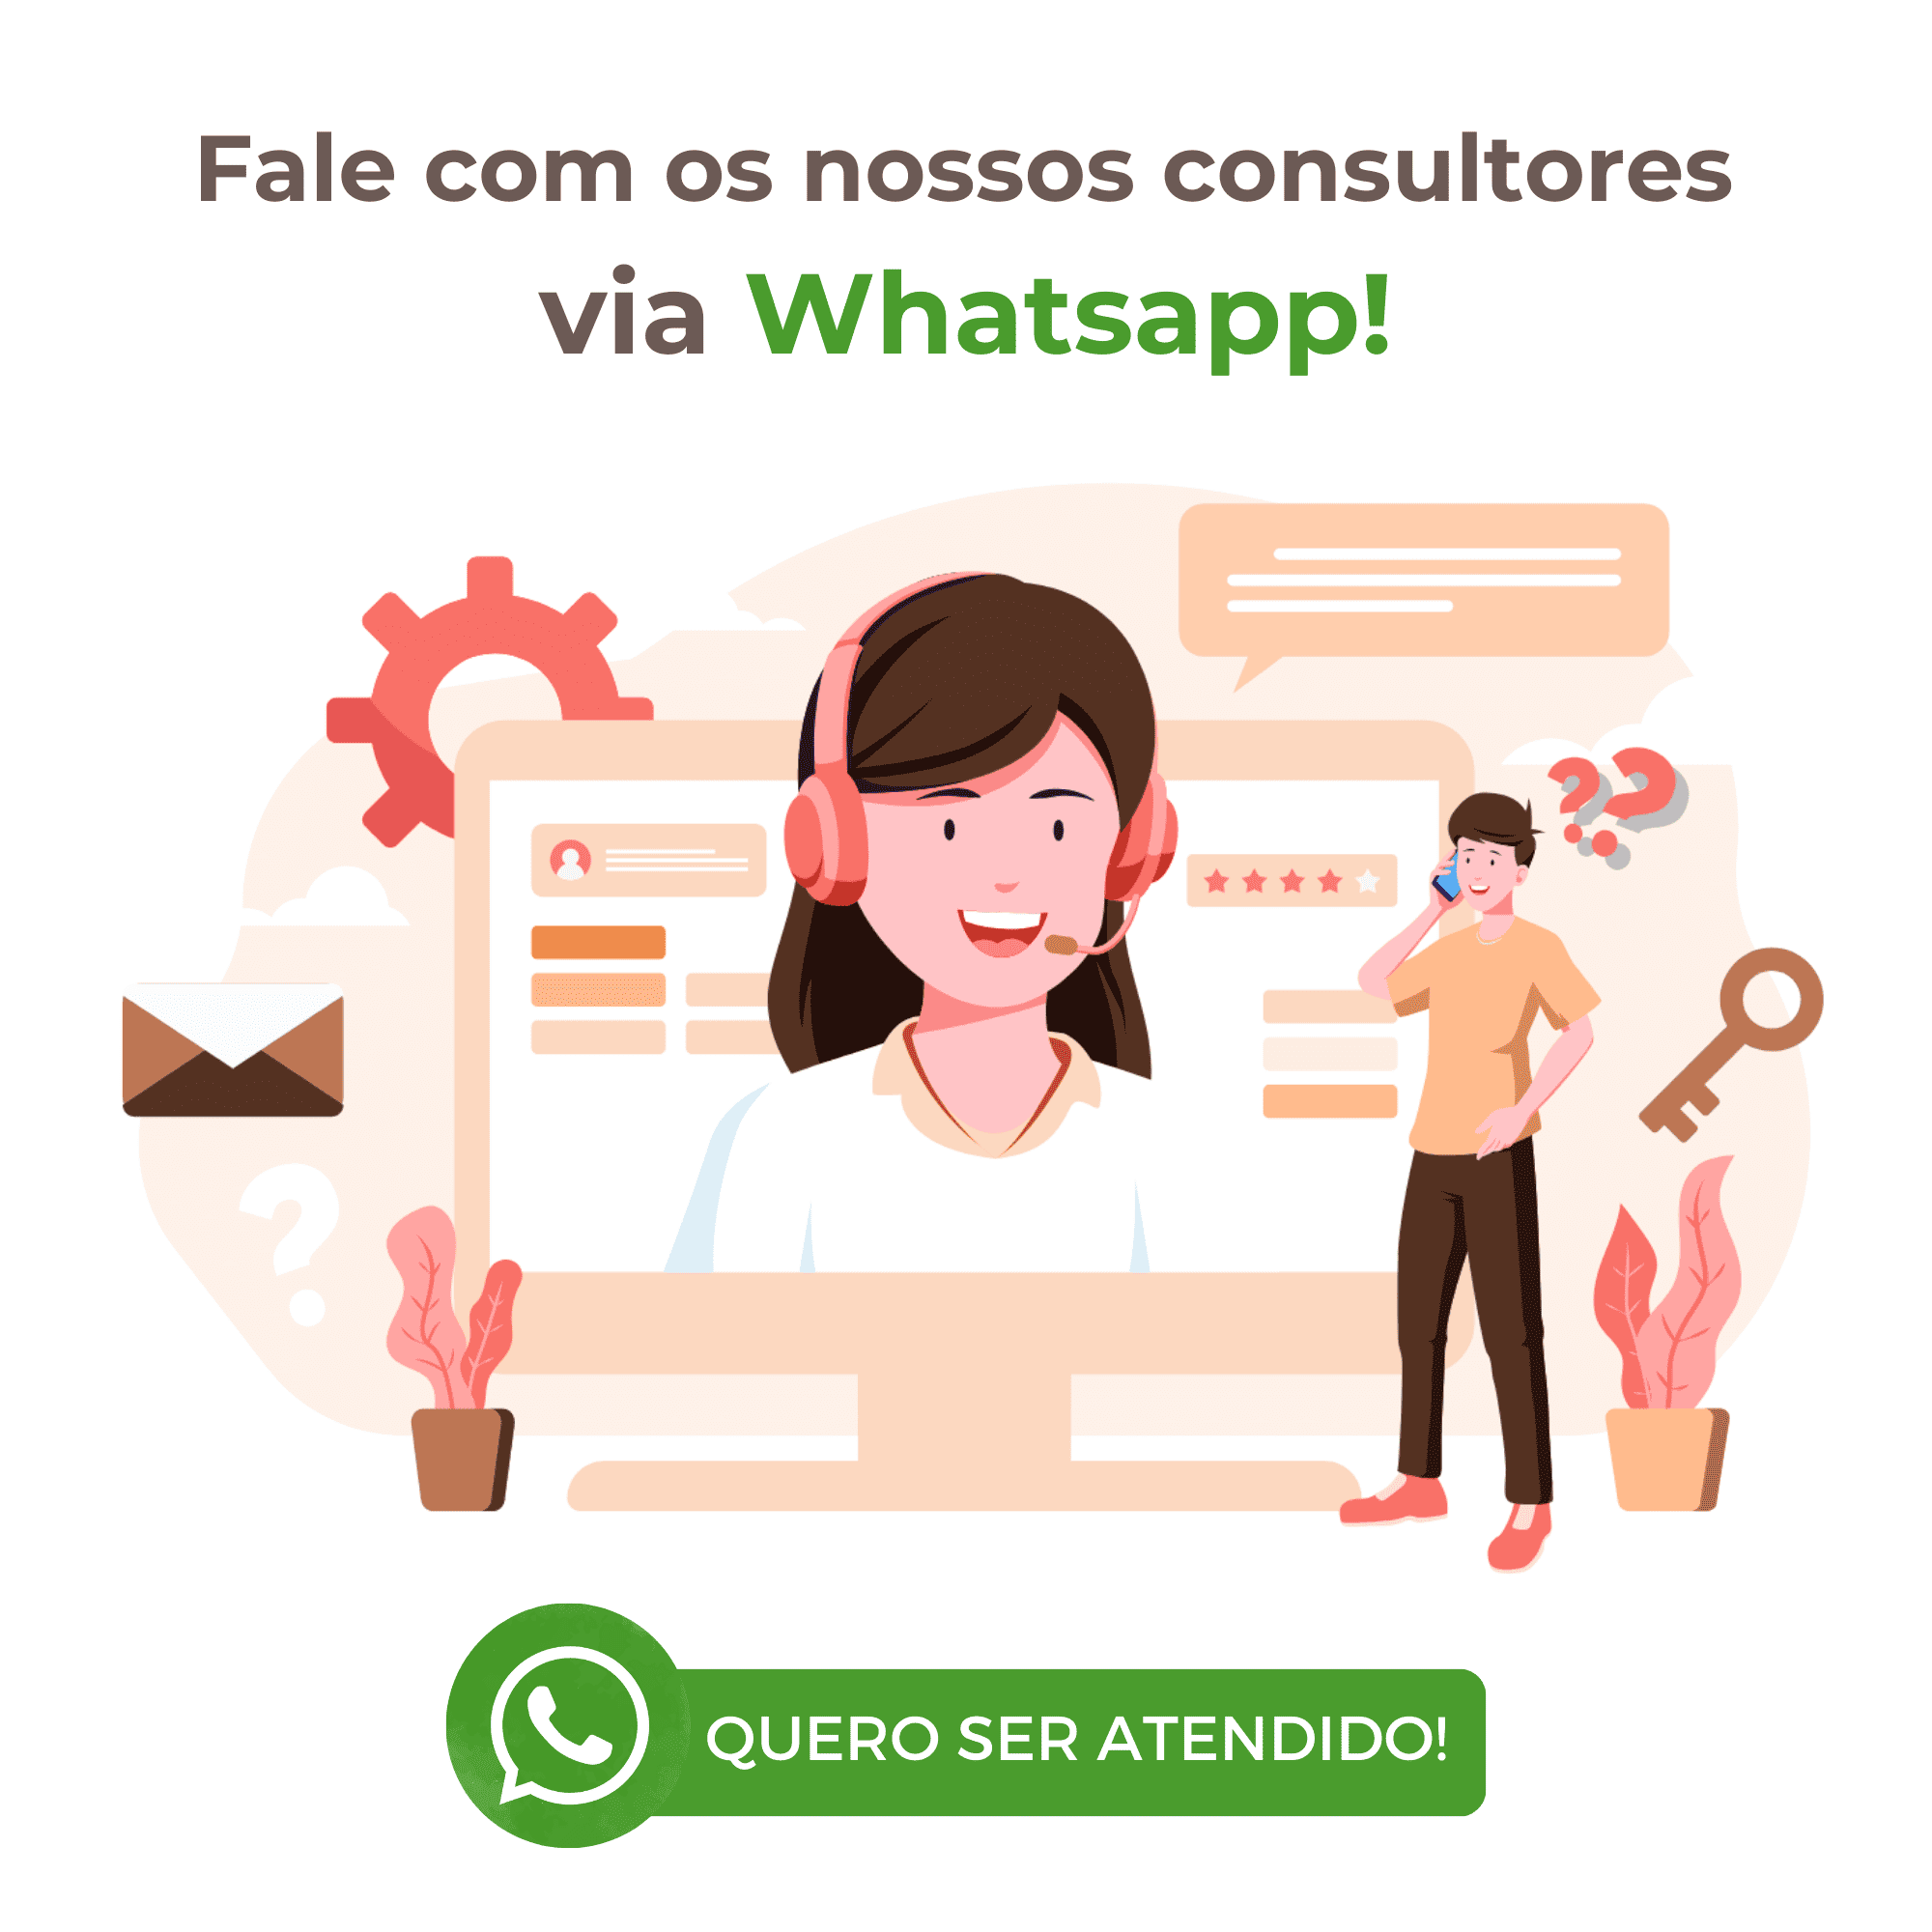 Fale com os nossos consultores via Whatsapp!